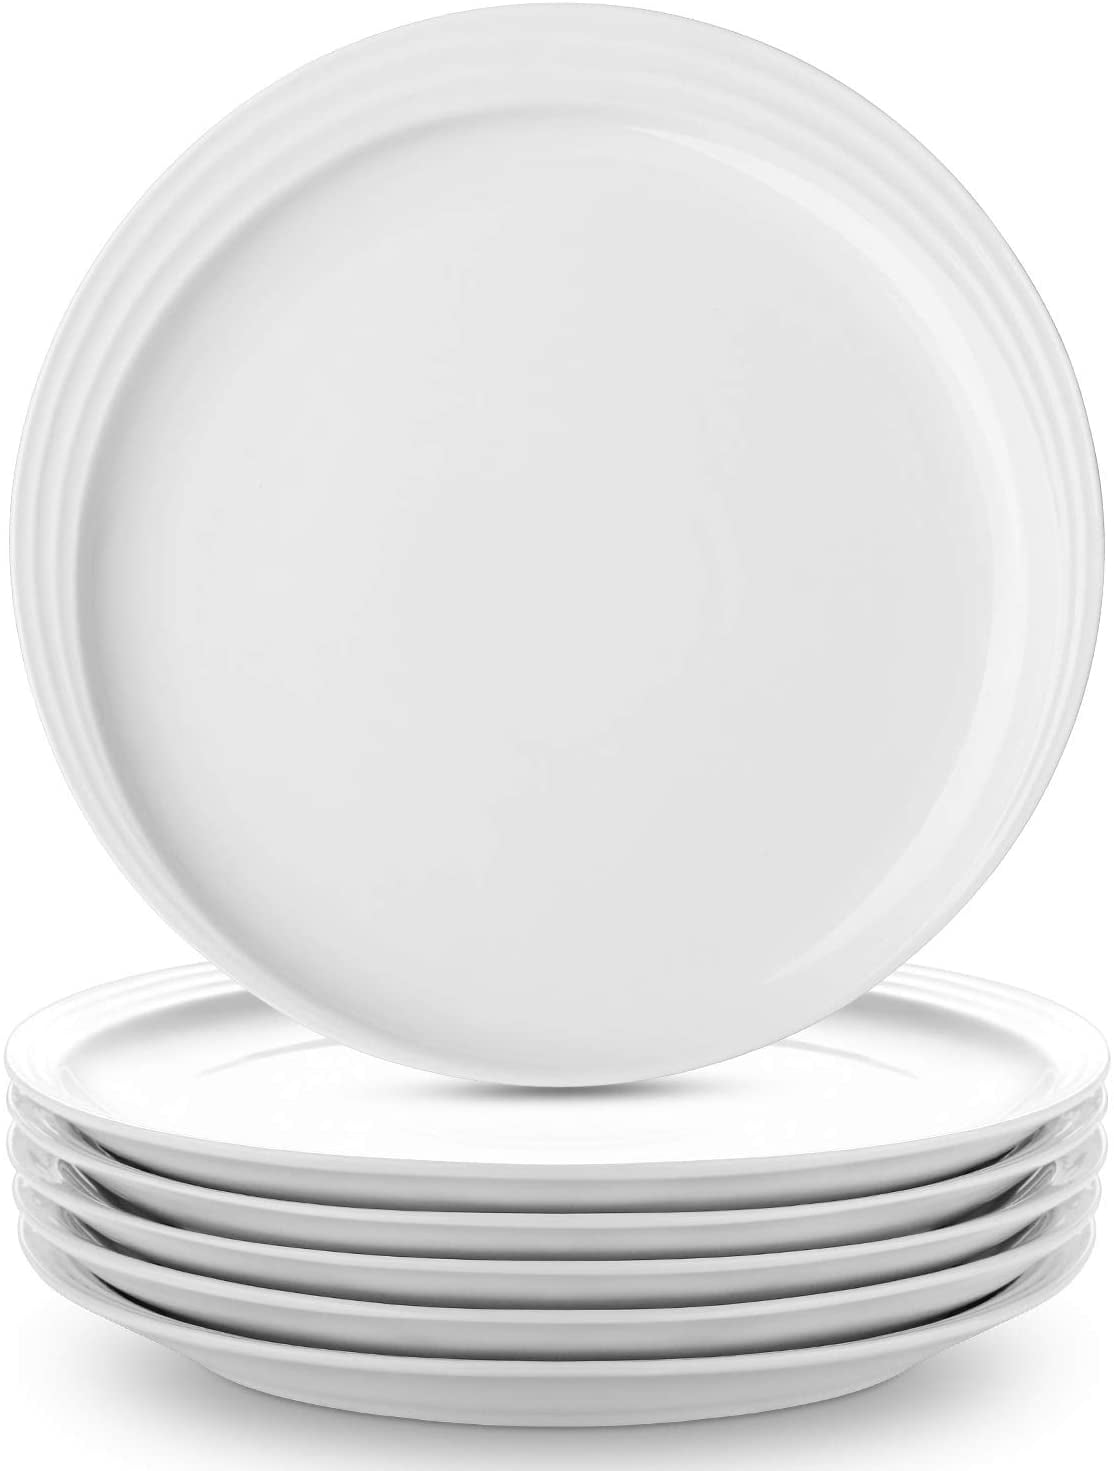 Mult 7.4 Inch Set of 6 Details about   Sweese 157.002 Porcelain Fluted Dessert Salad Plates